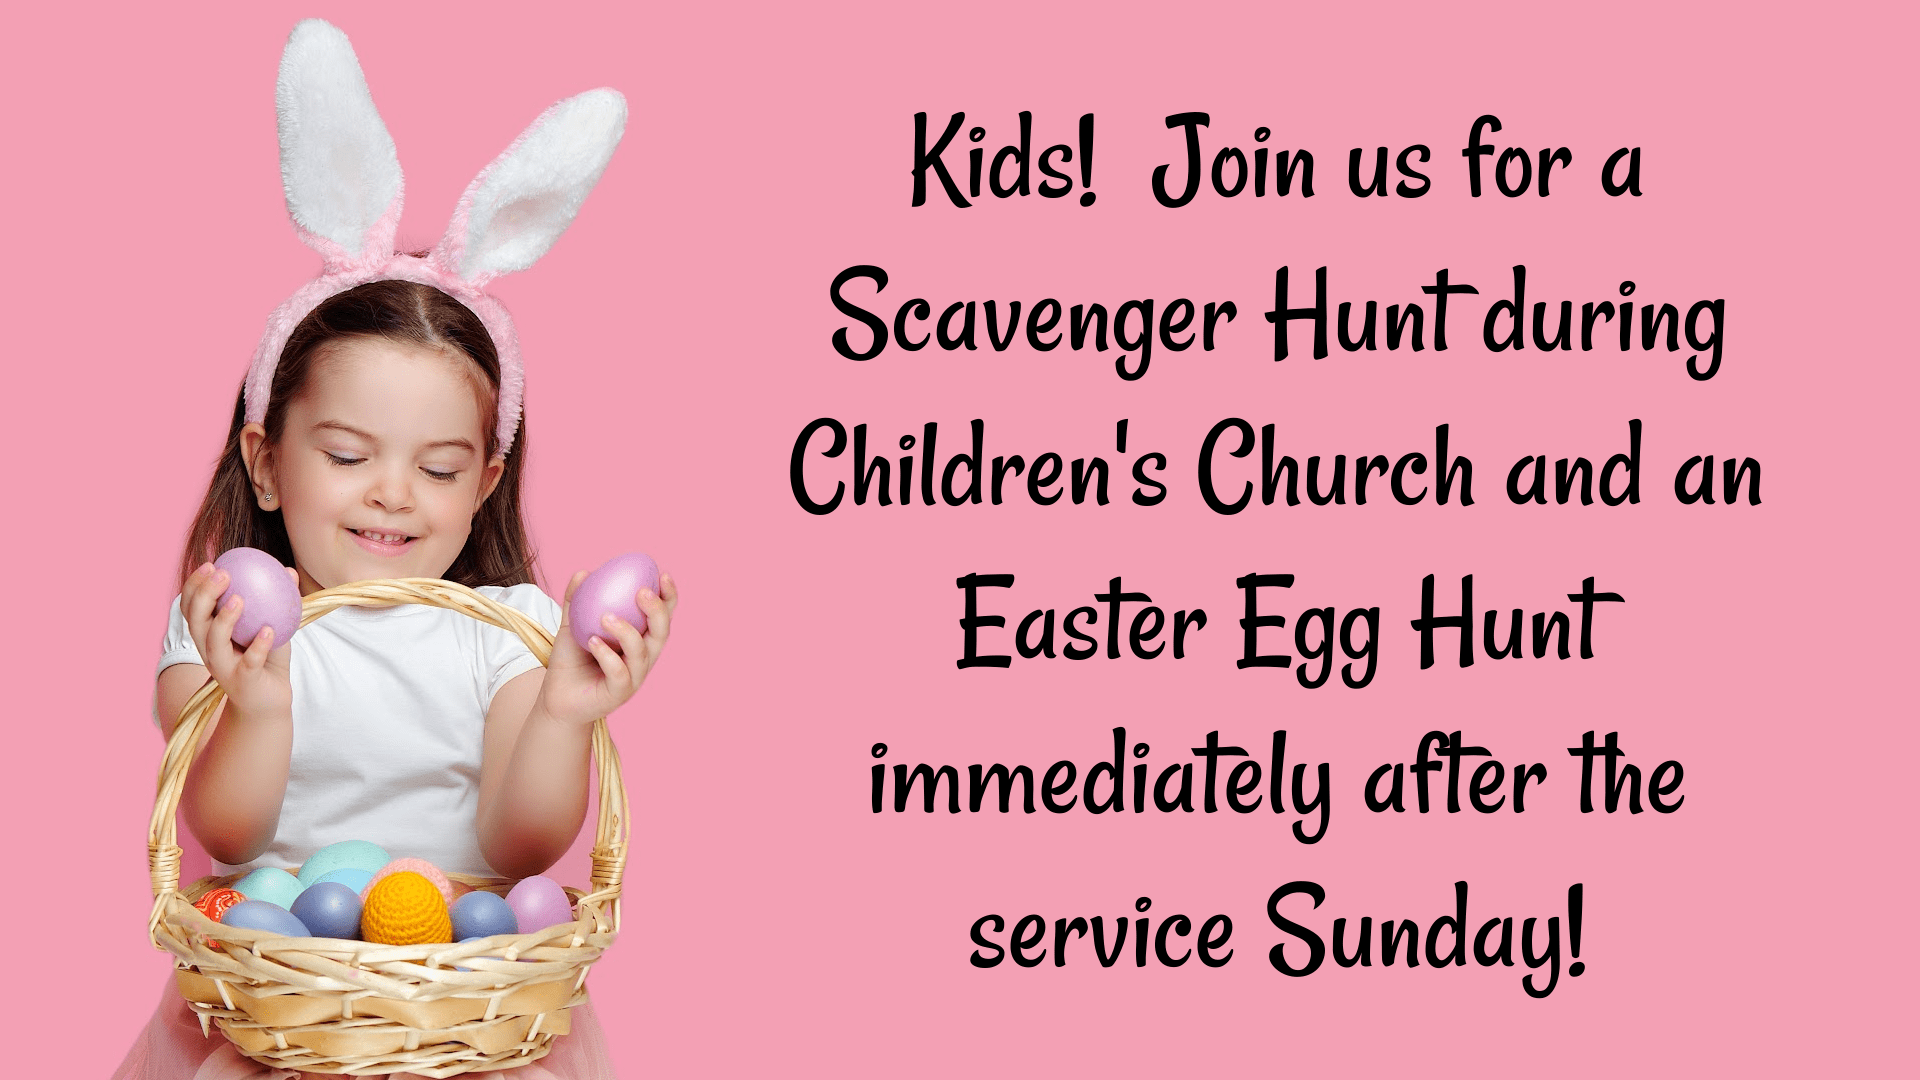 Easter Sunday for Kids!